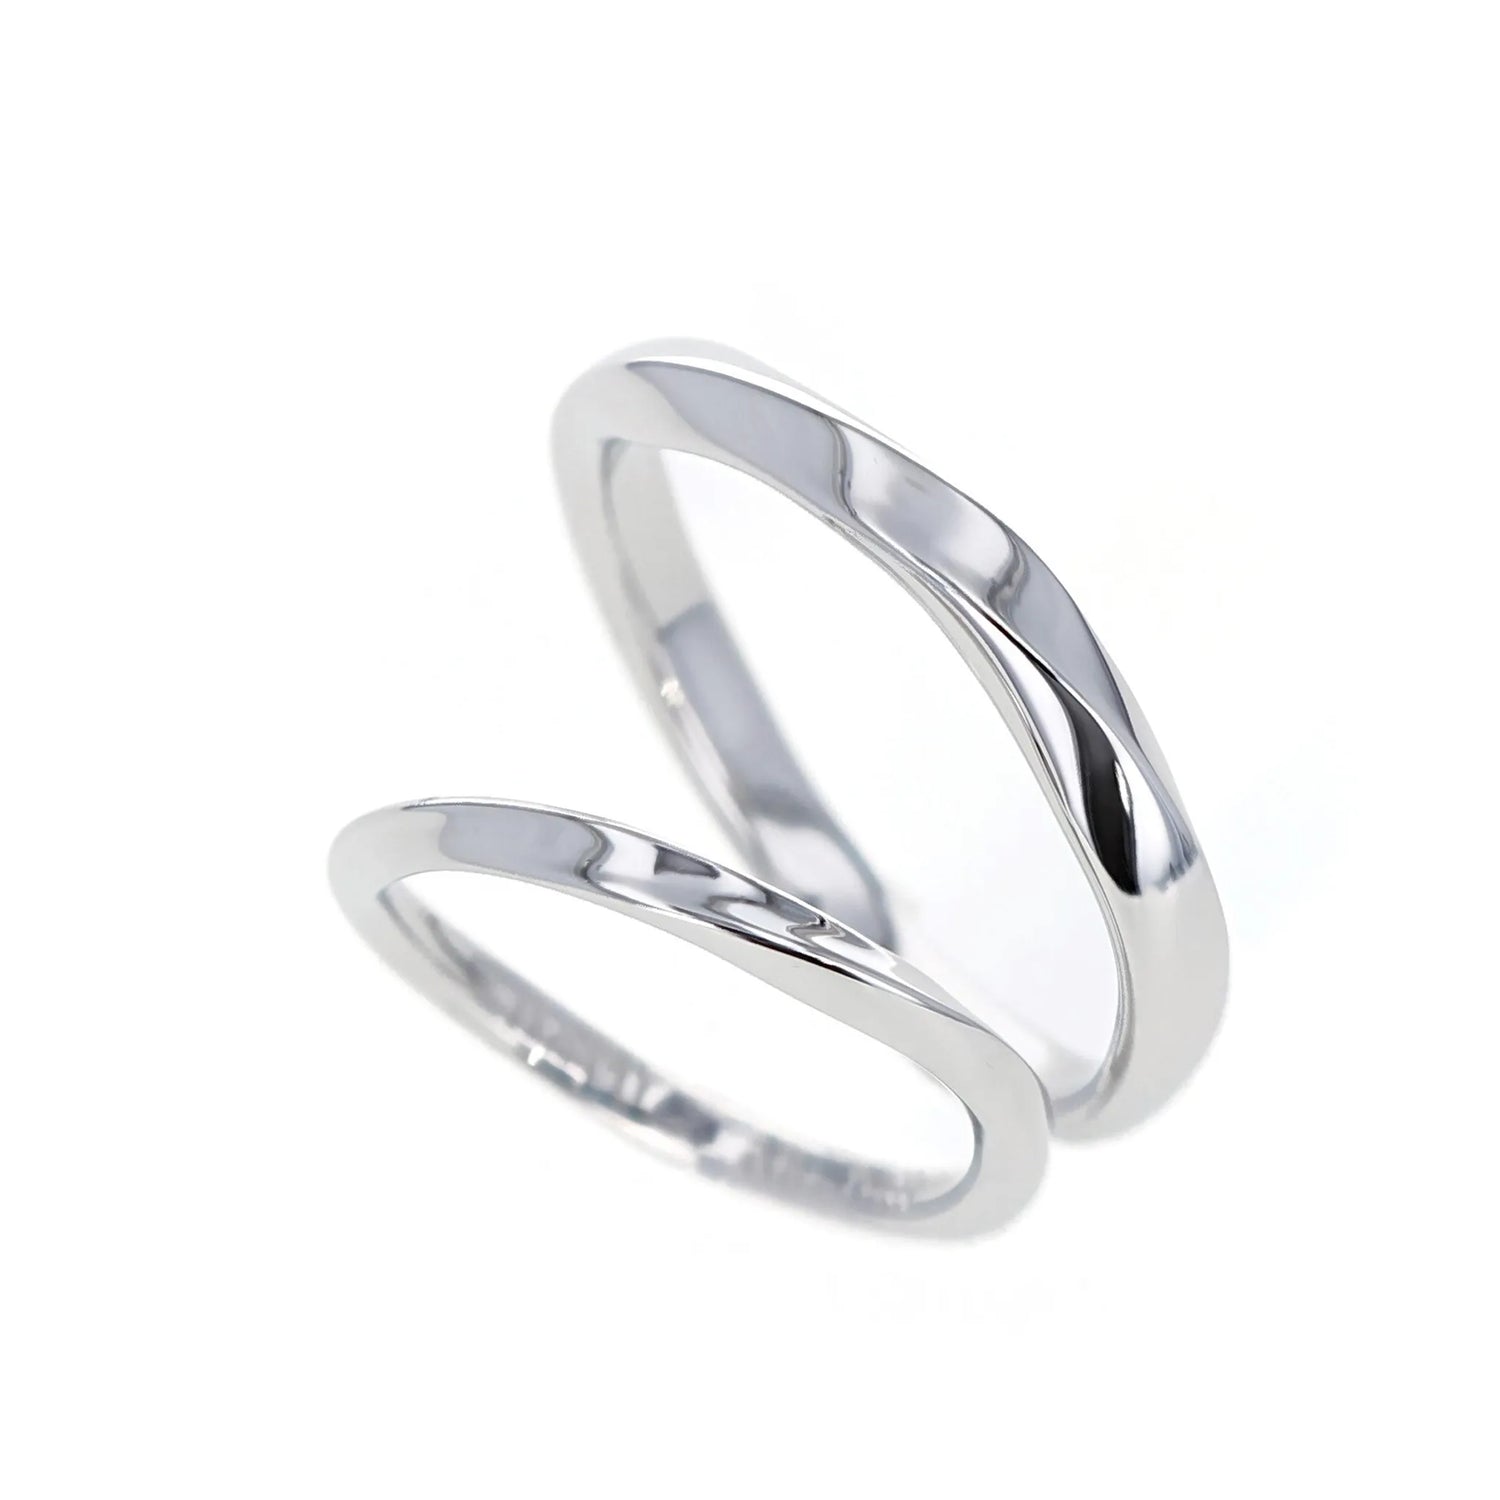  ひねりとエッジのきいたシンプルなデザインの結婚指輪　斜めから